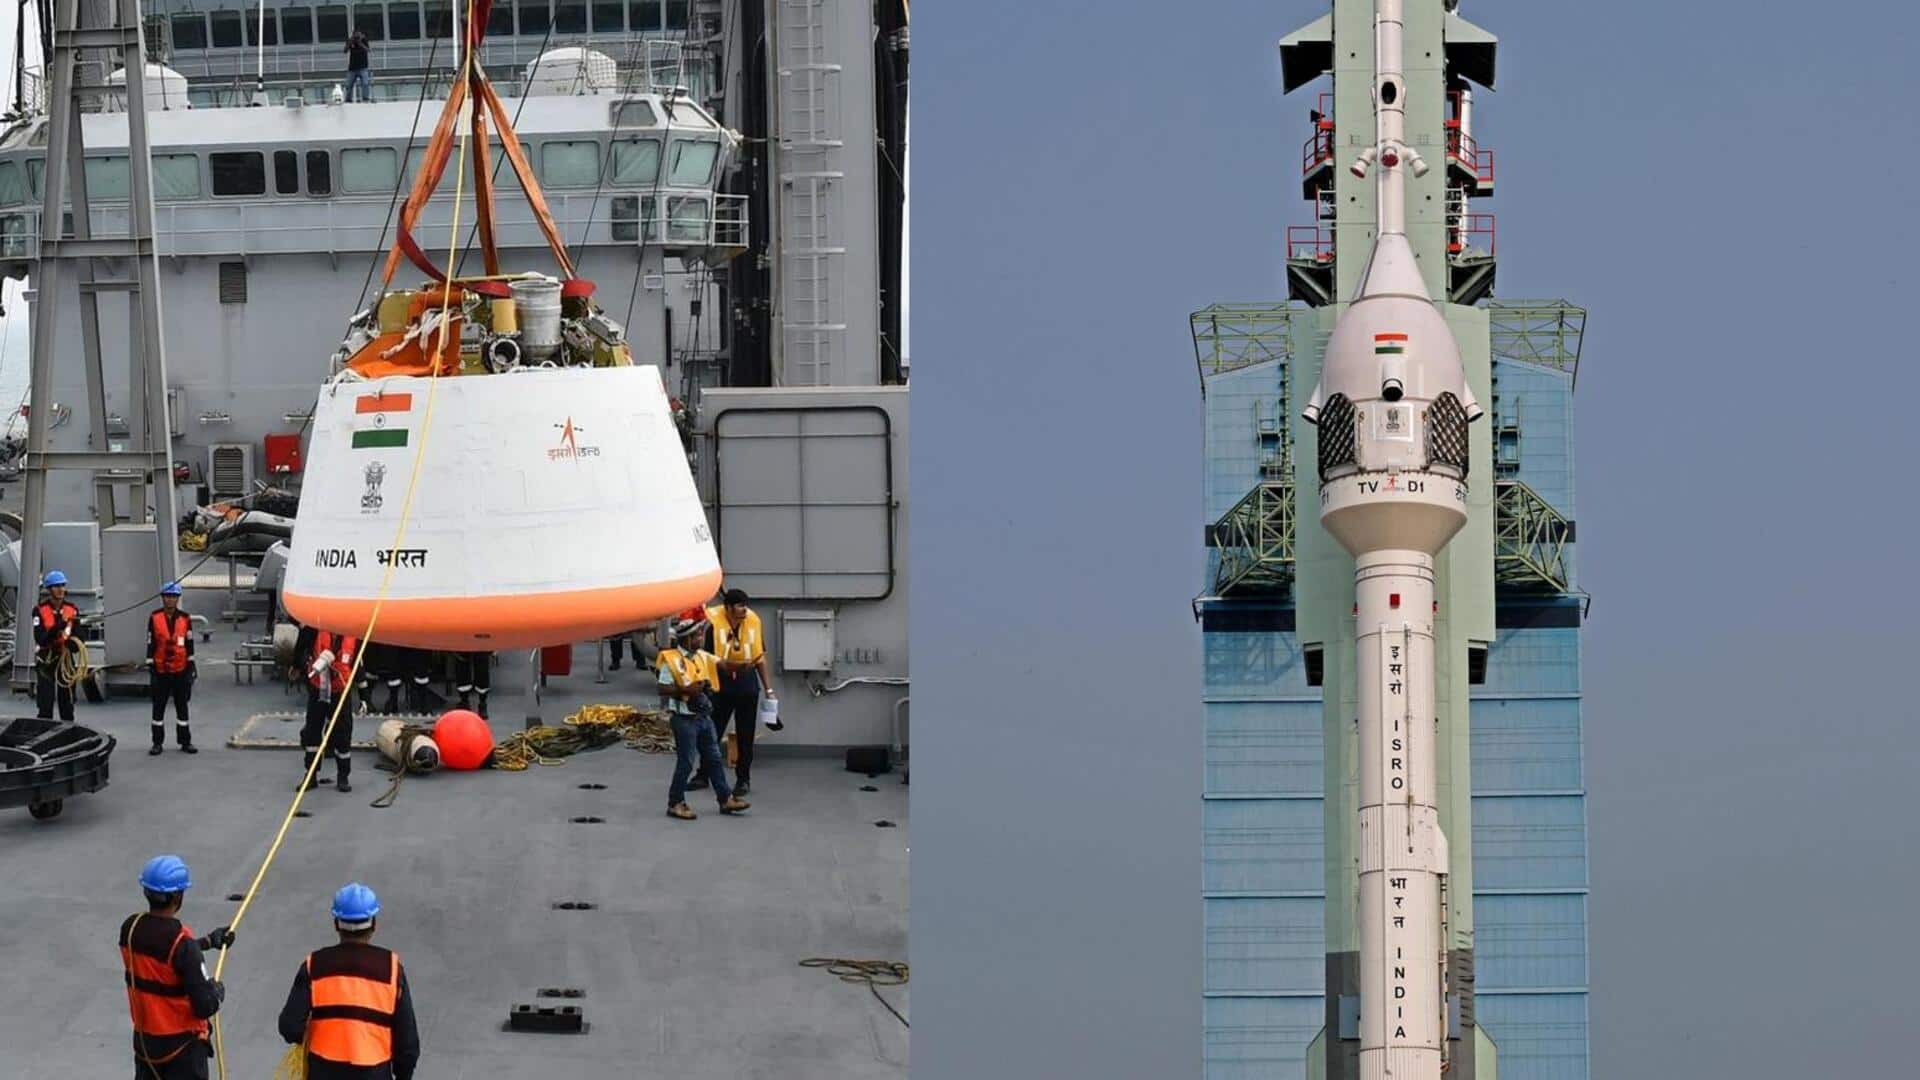 ISRO ने शेयर किया गगनयान मिशन की टेस्ट फ्लाइट का वीडियो, देखिए कब क्या हुआ